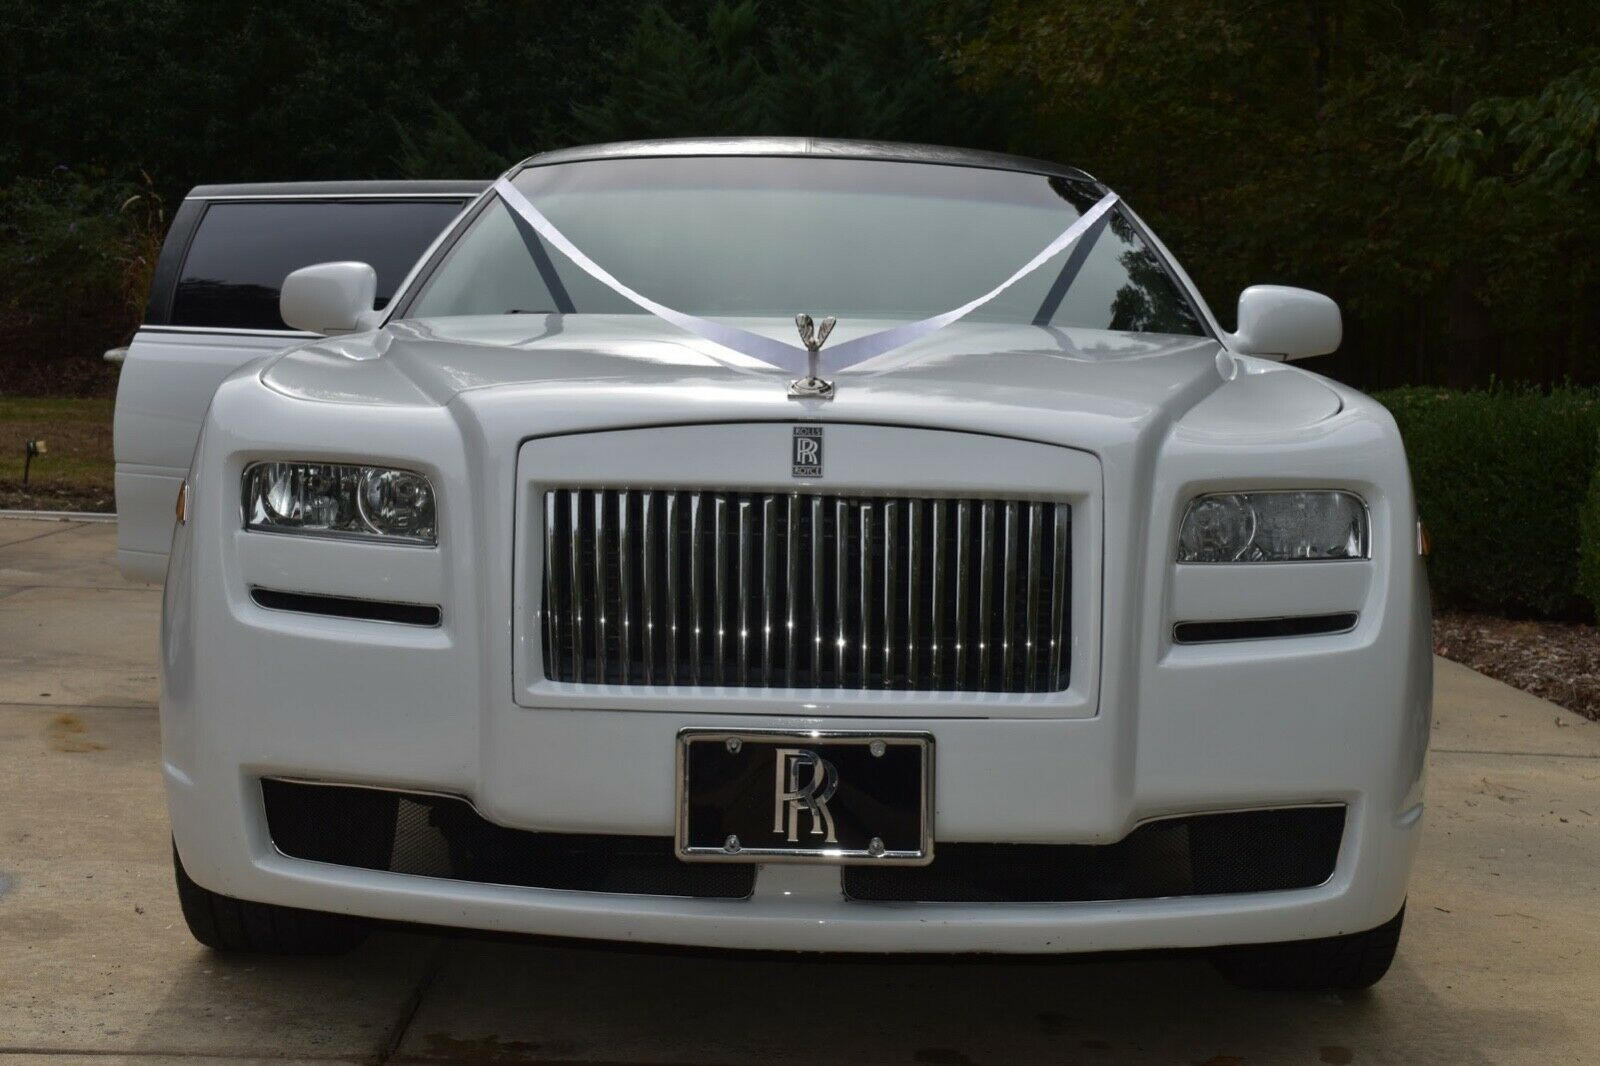 Nhìn rất Rolls-Royce Ghost mà lại là Lincoln nhưng màn độ limousine còn thuyết phục hơn - Ảnh 5.